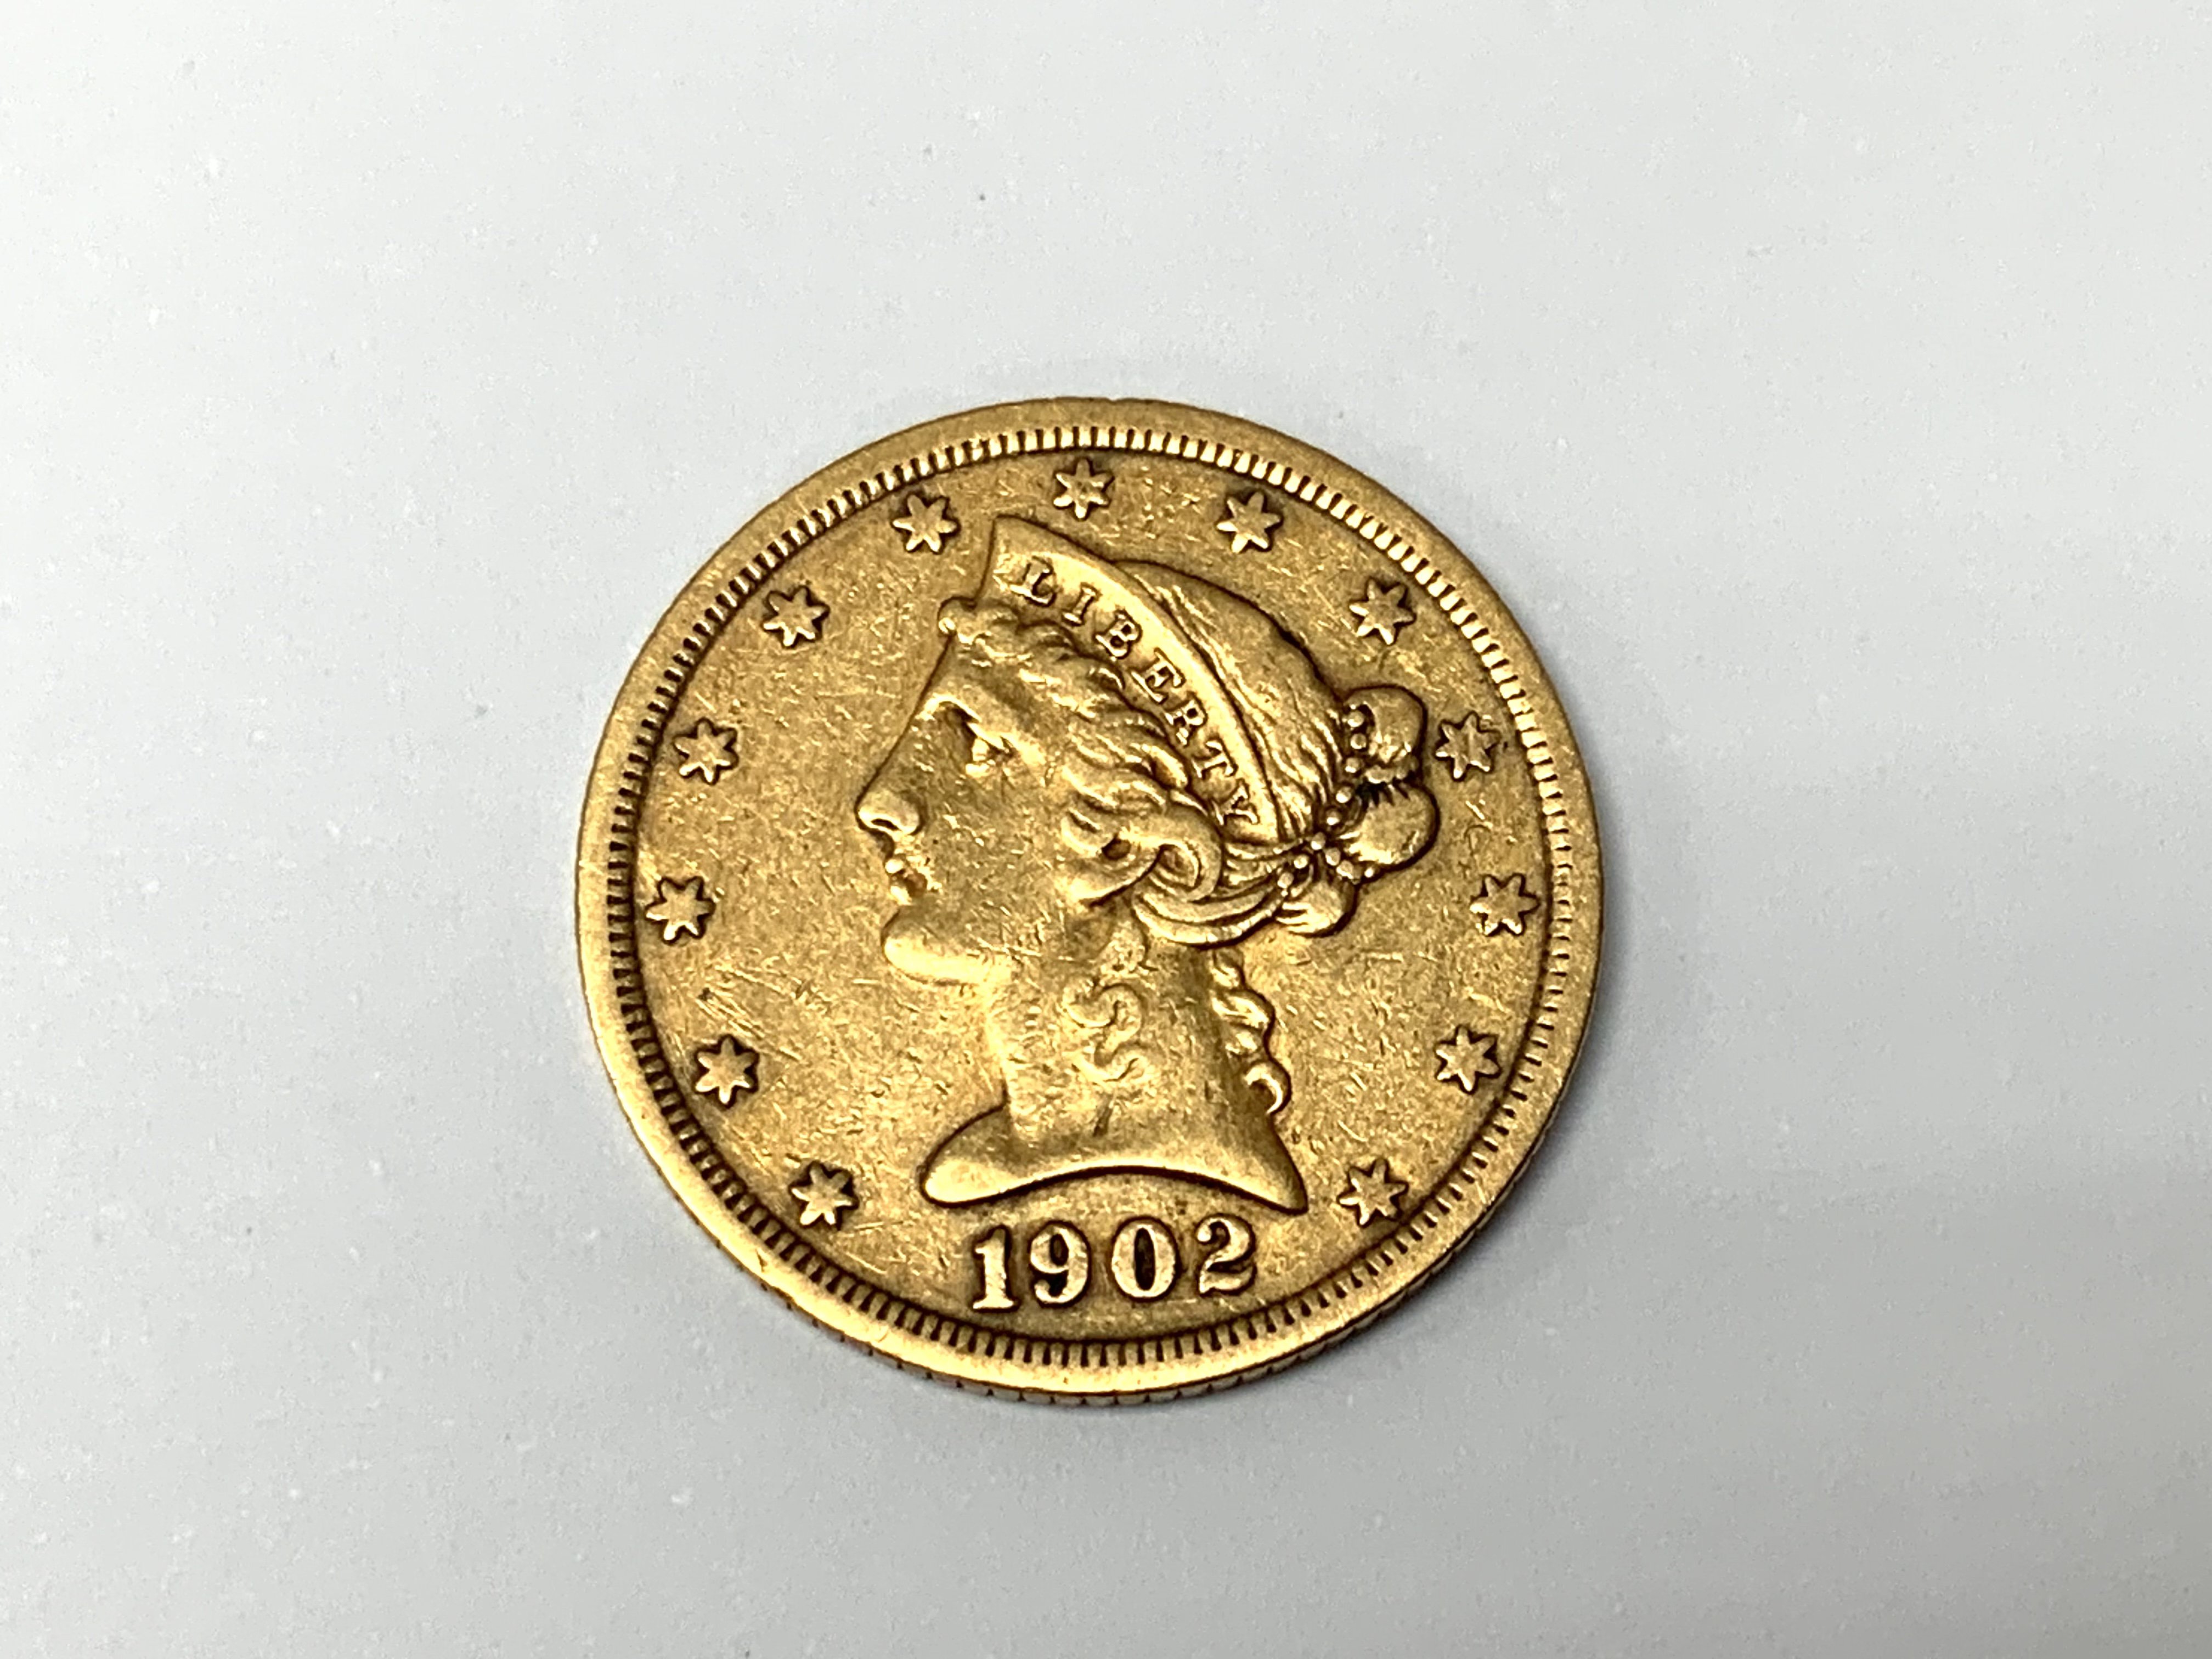 1902 San Francisco Half eagle gold coin. (A)